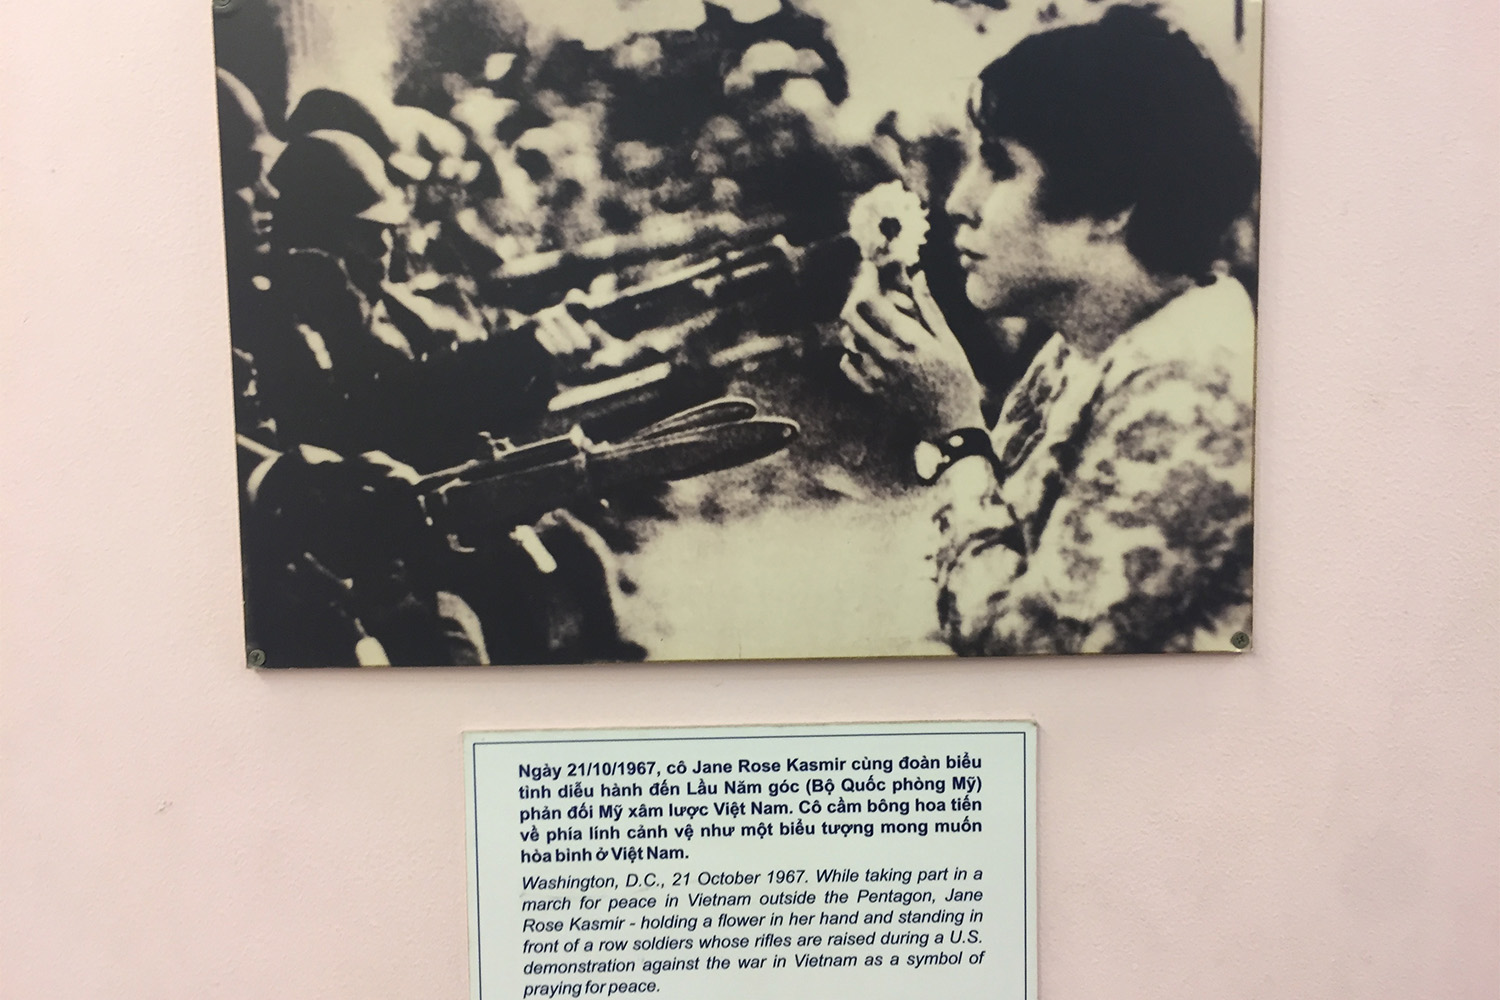 Cette photo célèbre prise lors d’une manifestation pacifiste en 1967 témoigne de l’engagement de nombre d’Américains contre la guerre du Vietnam.